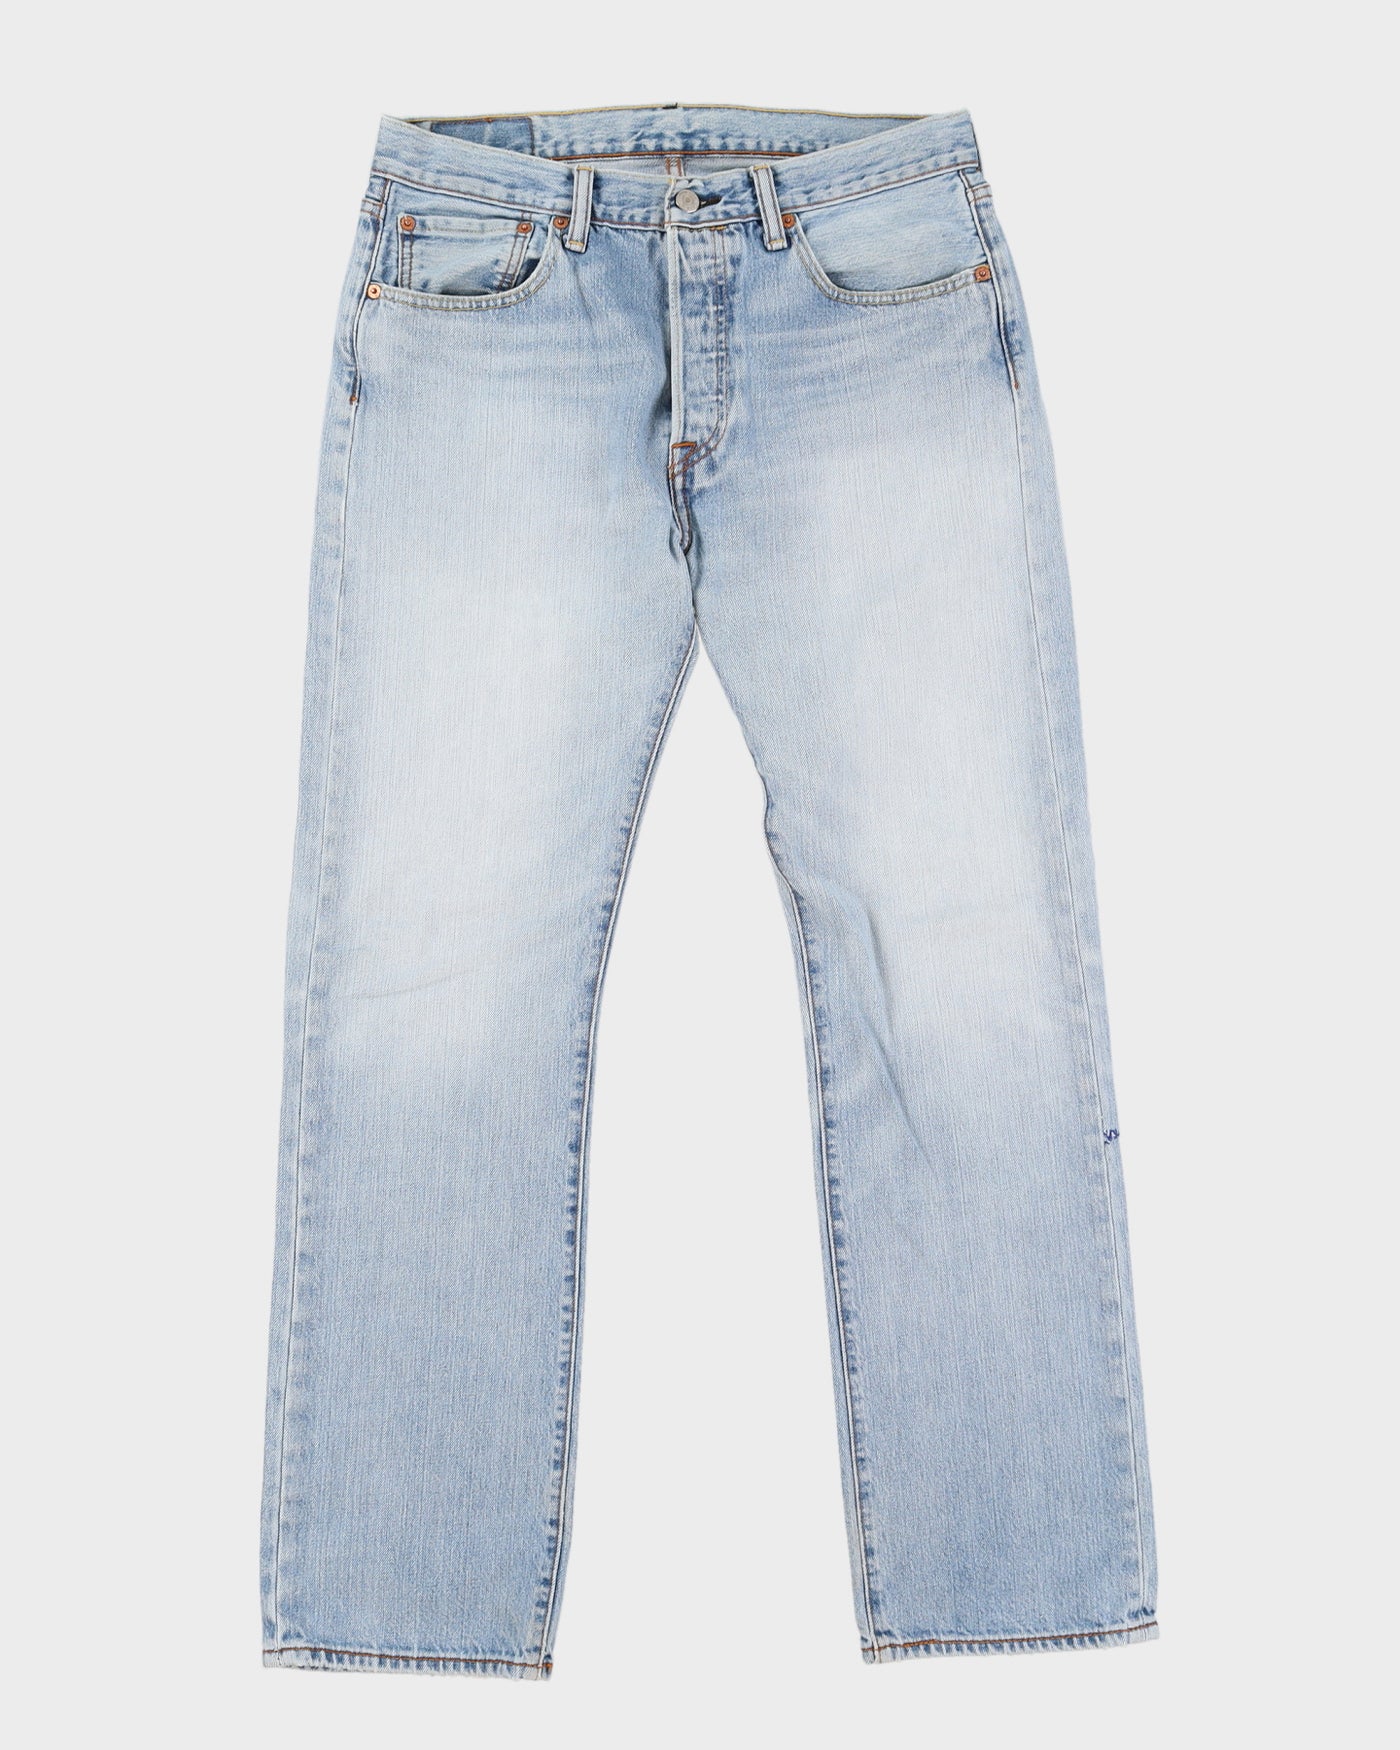 90s Levi's 501 Blue Jeans - W33 L31